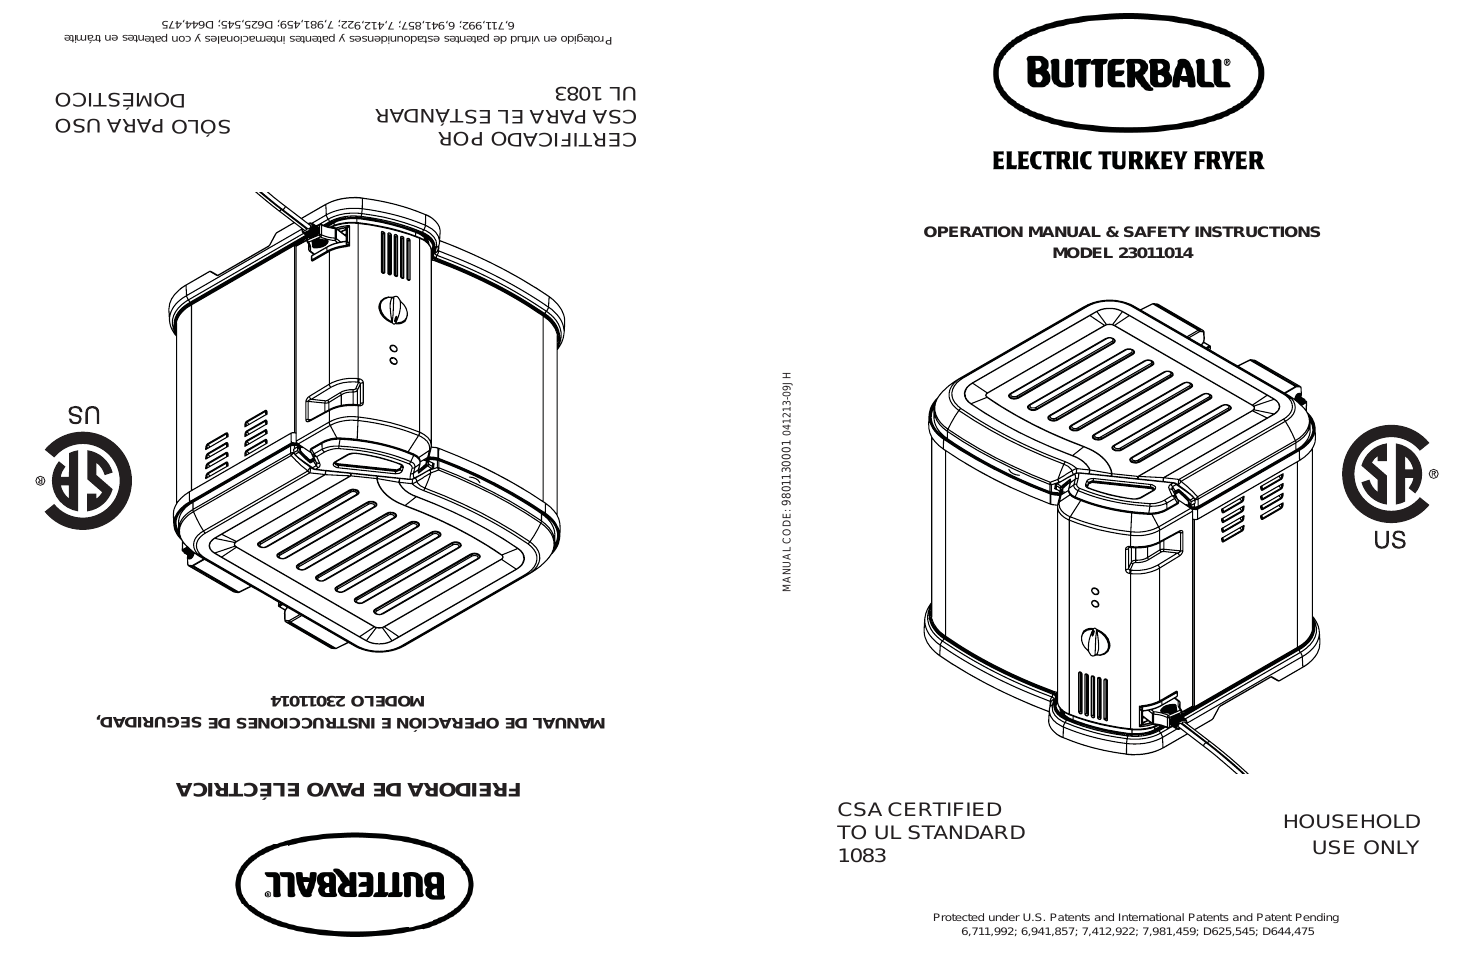 Butterball Indoor Electric Turkey Fryer (23011014)